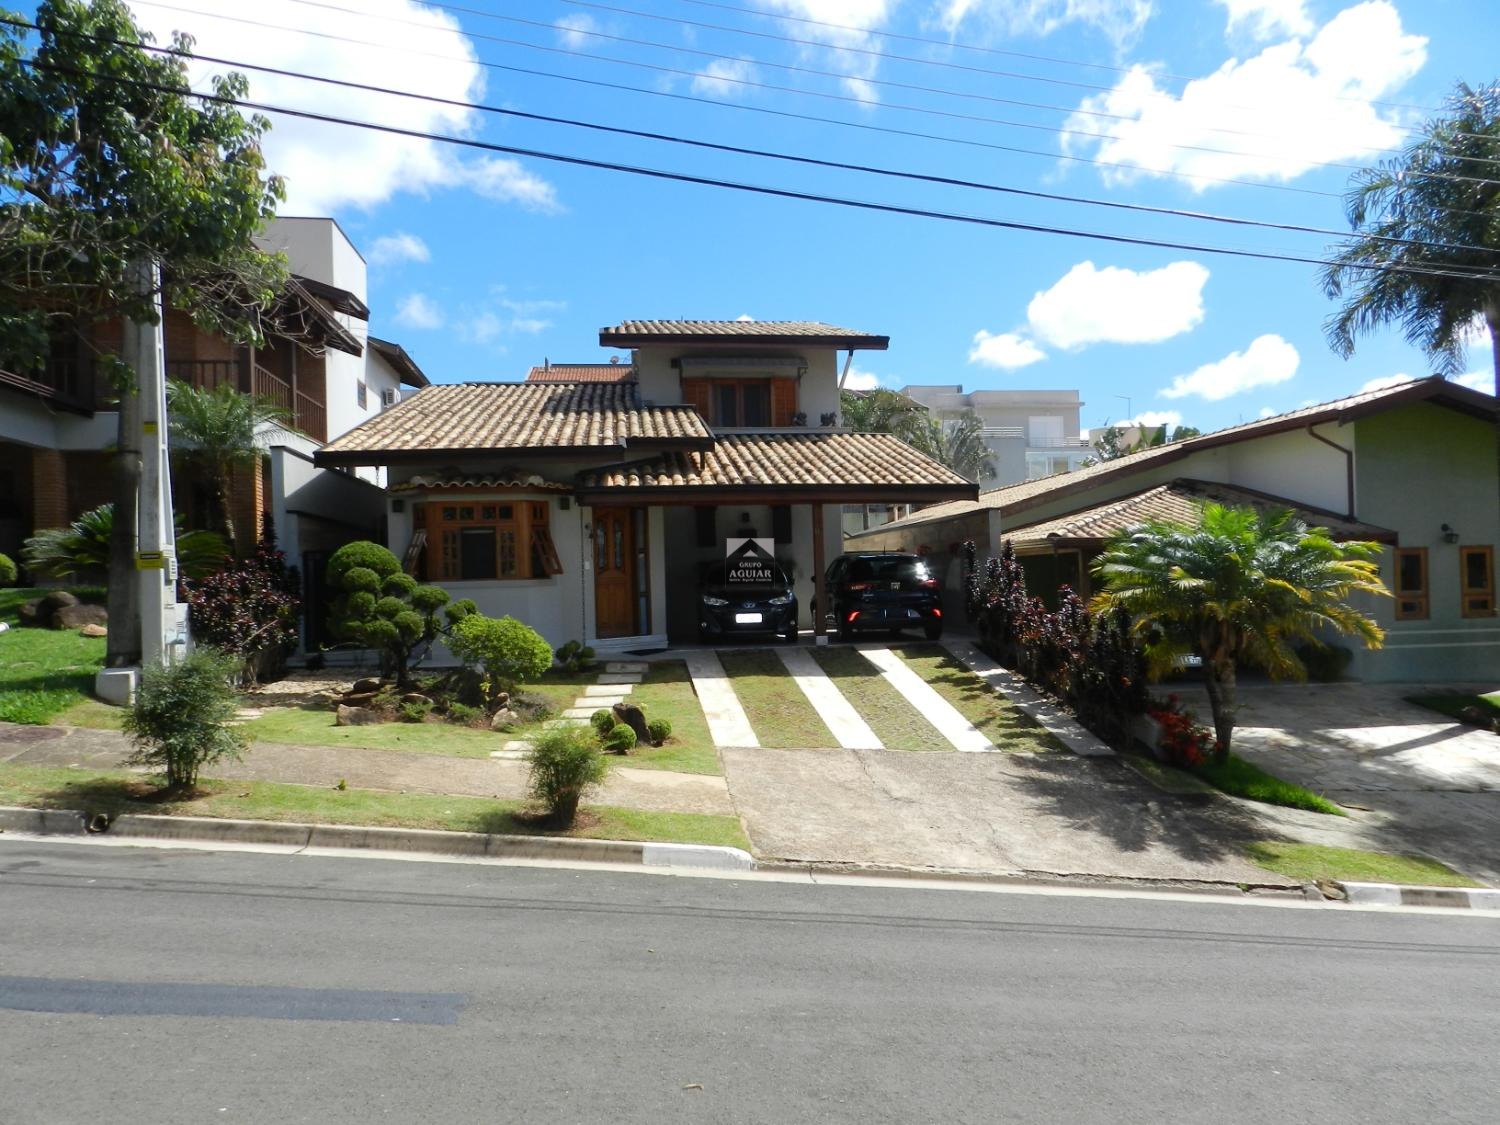 CA006033 | Casa venda Jardim São Marcos | Valinhos/SP